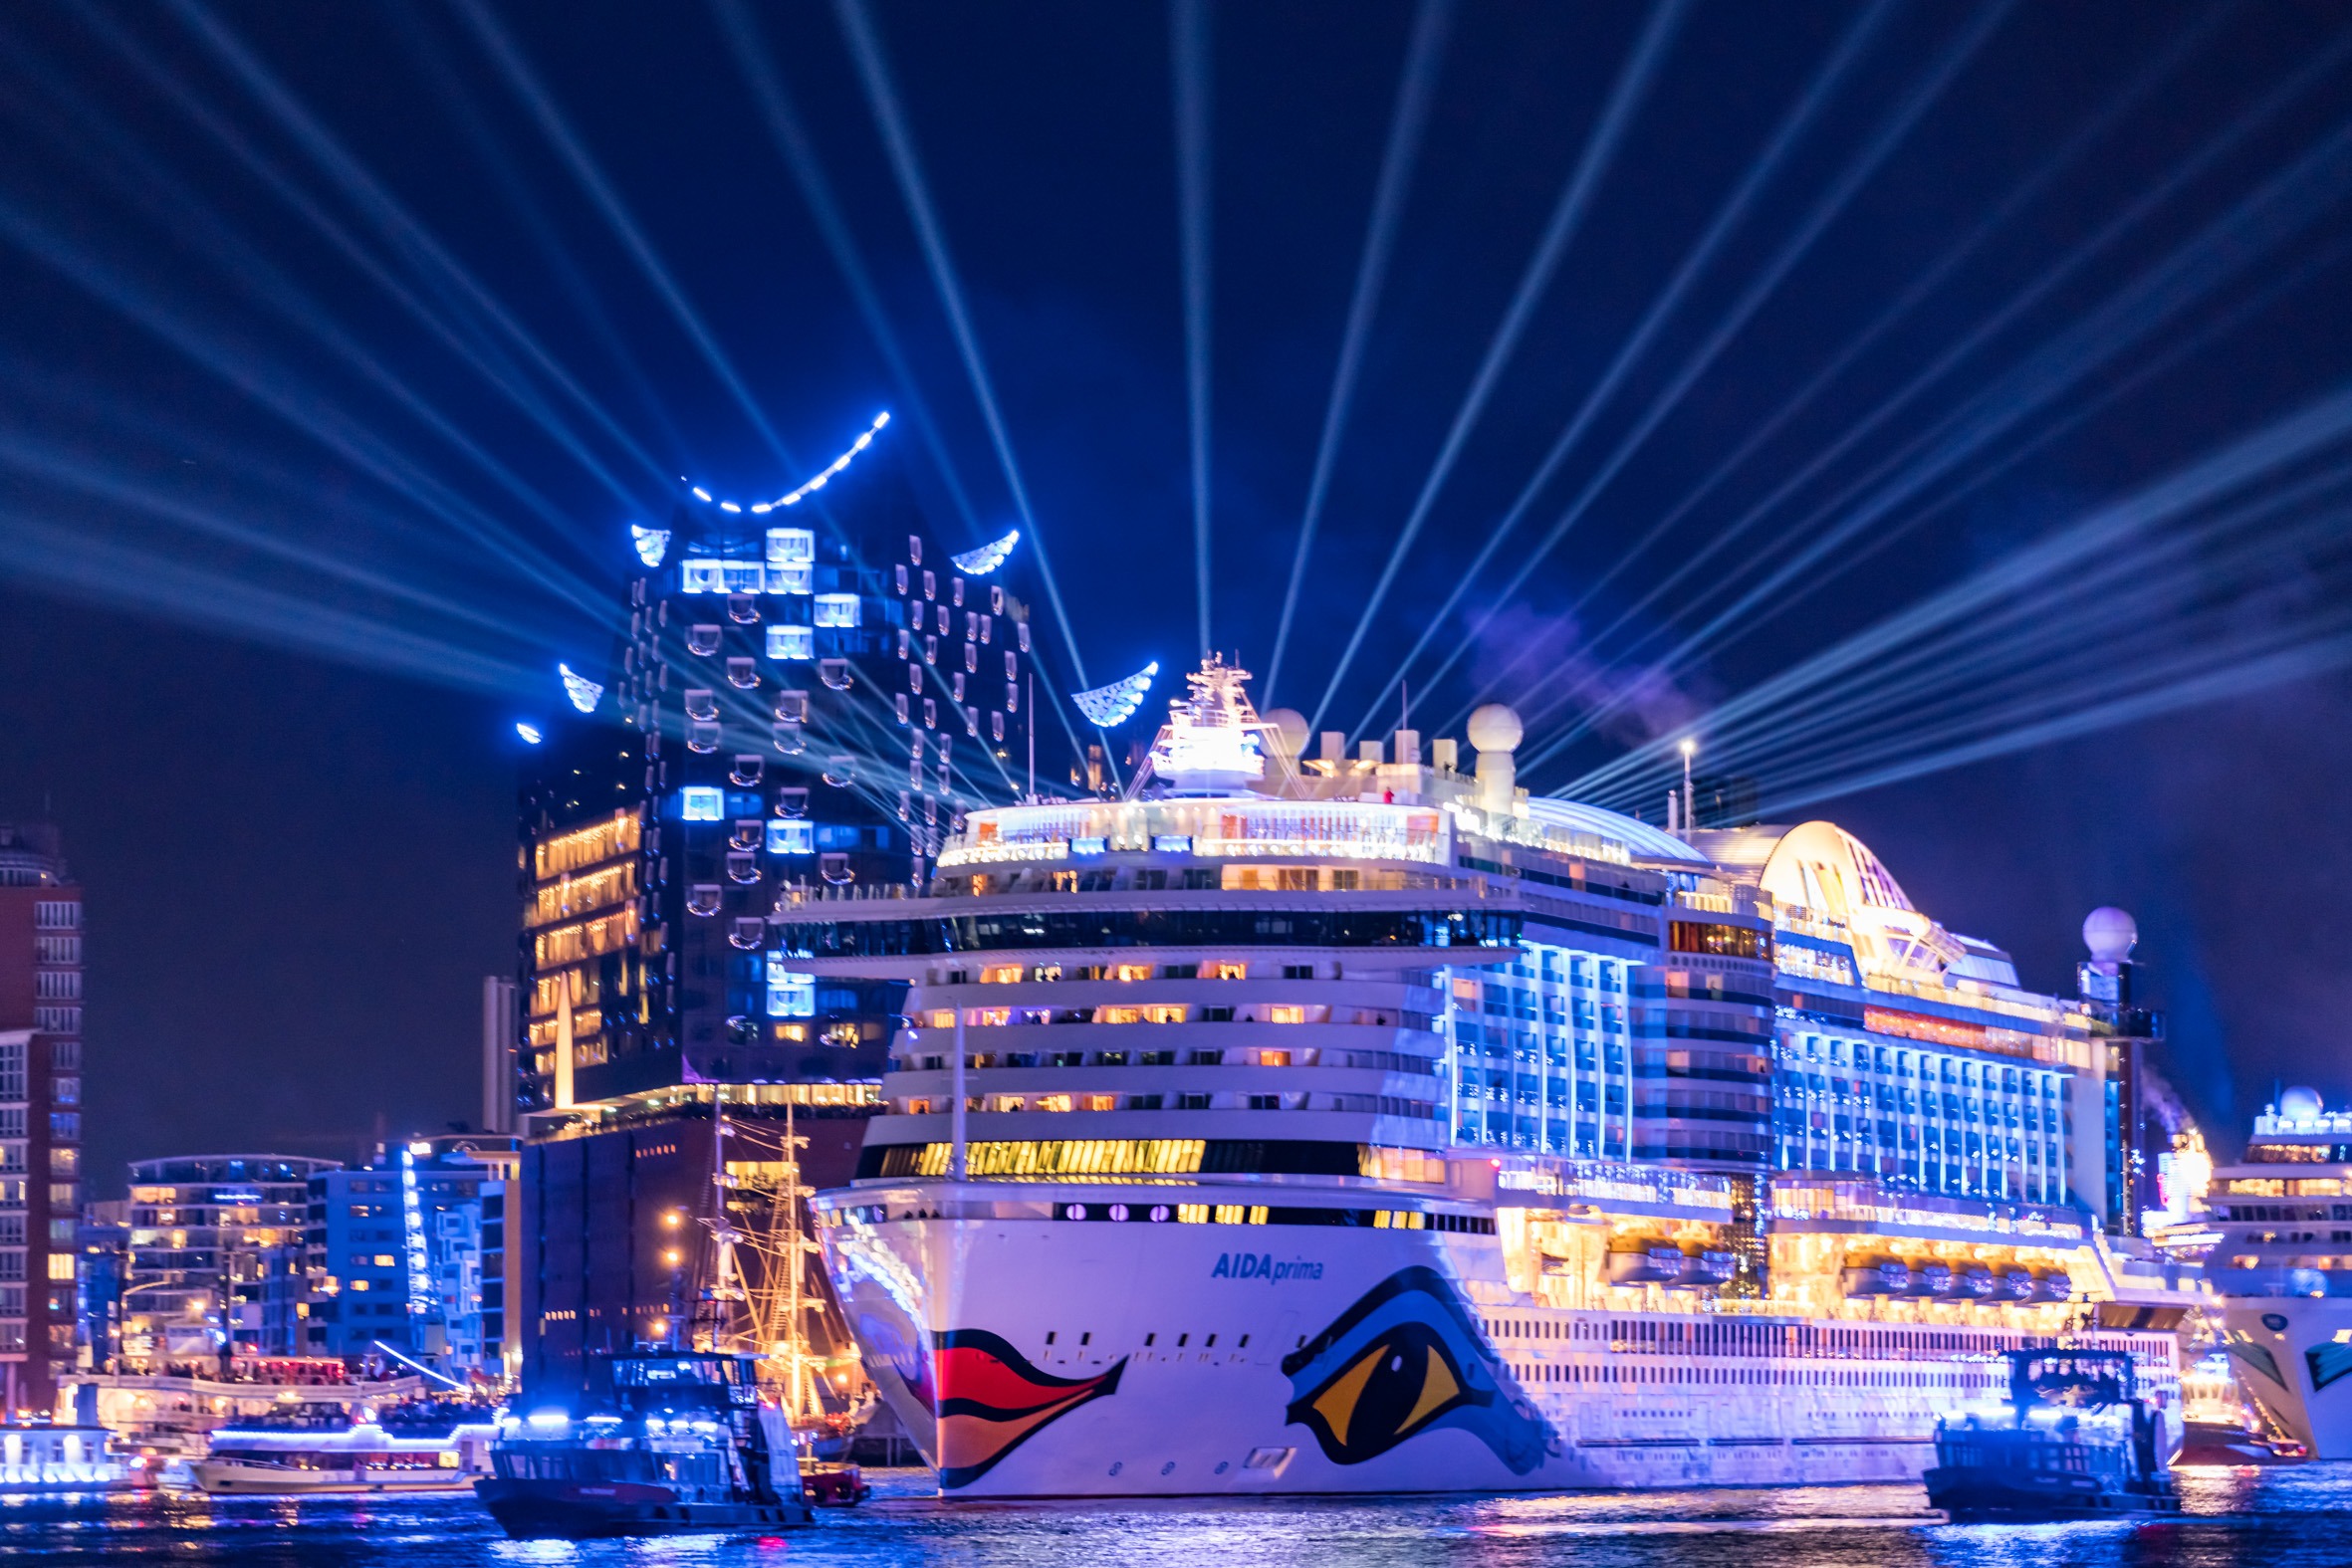 Make Hamburg Cruise Days Part Of Your Next Vacation Porthole Cruise